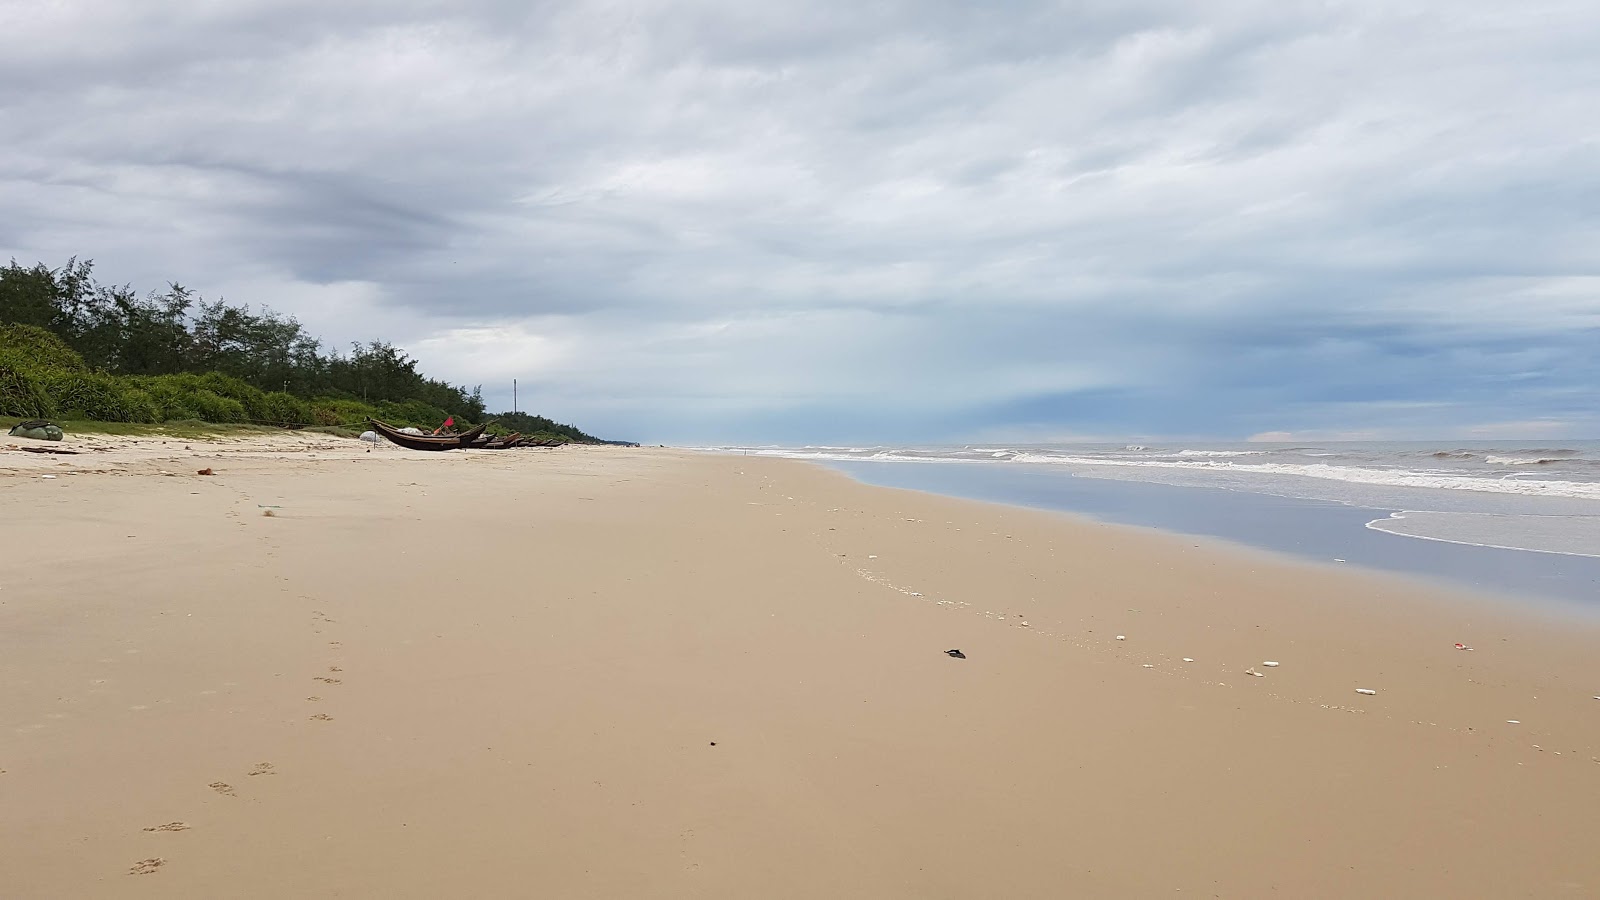 Zdjęcie Tan An Beach z powierzchnią jasny piasek